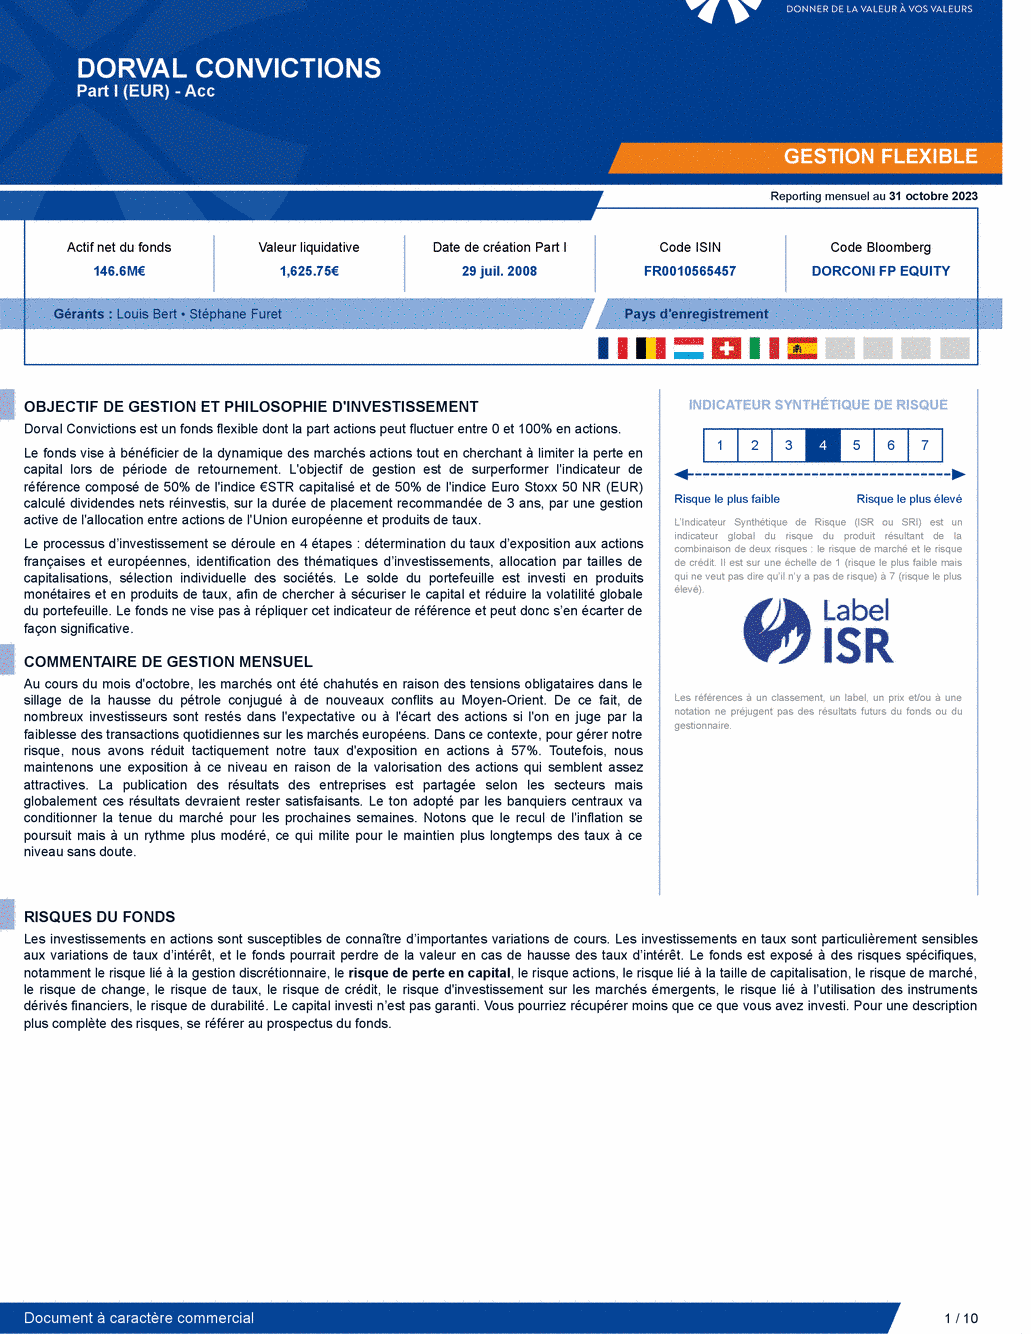 Reporting DORVAL CONVICTIONS I - 31/10/2023 - Français